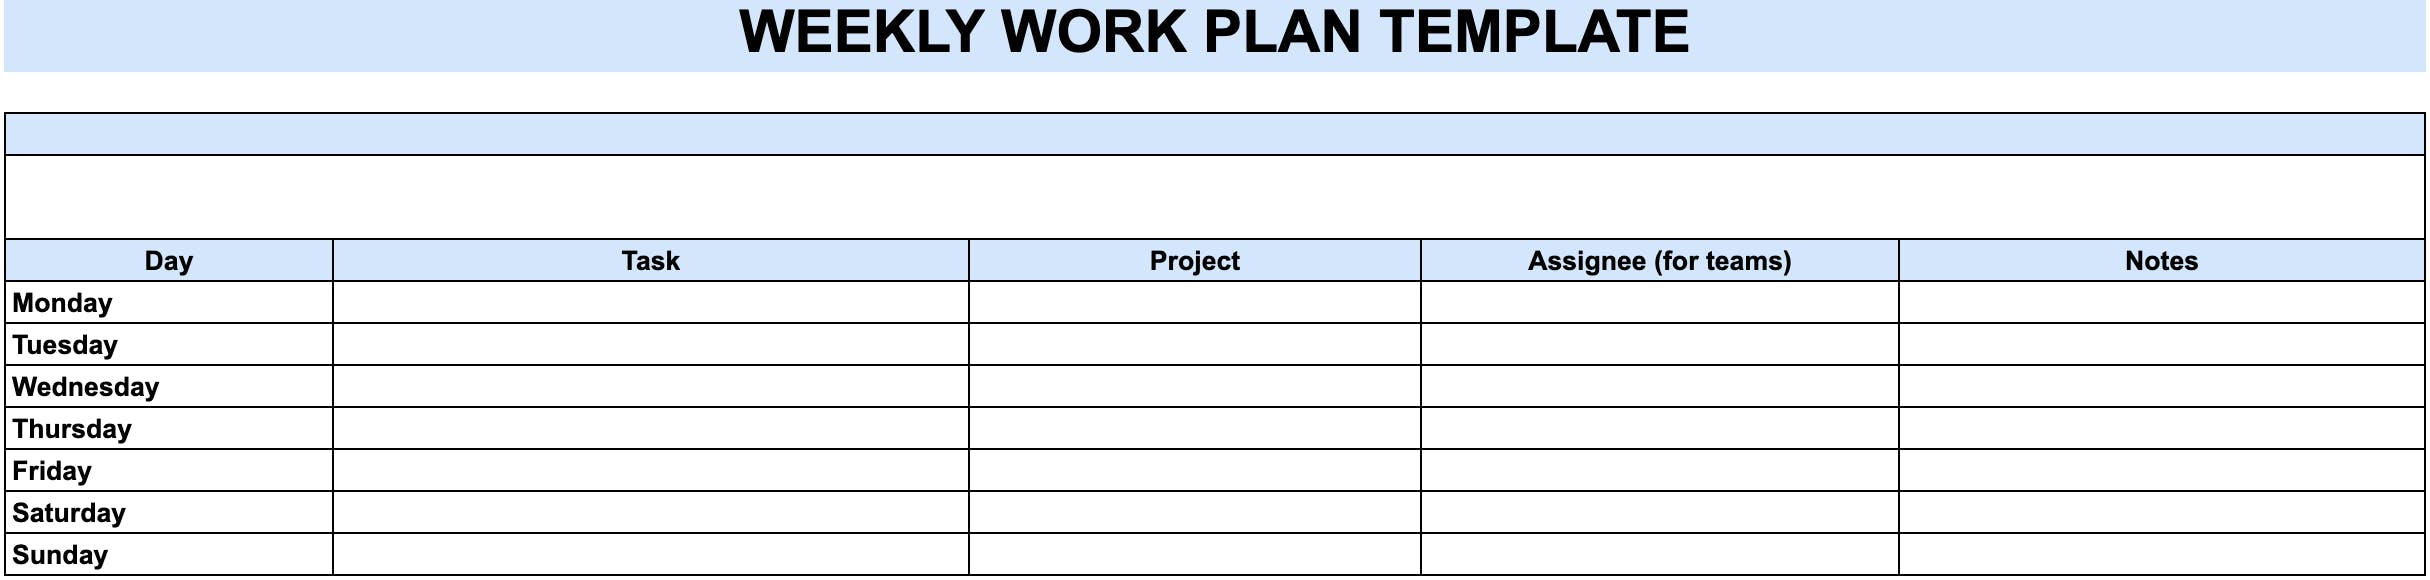 Screenshot of weekly work plan template